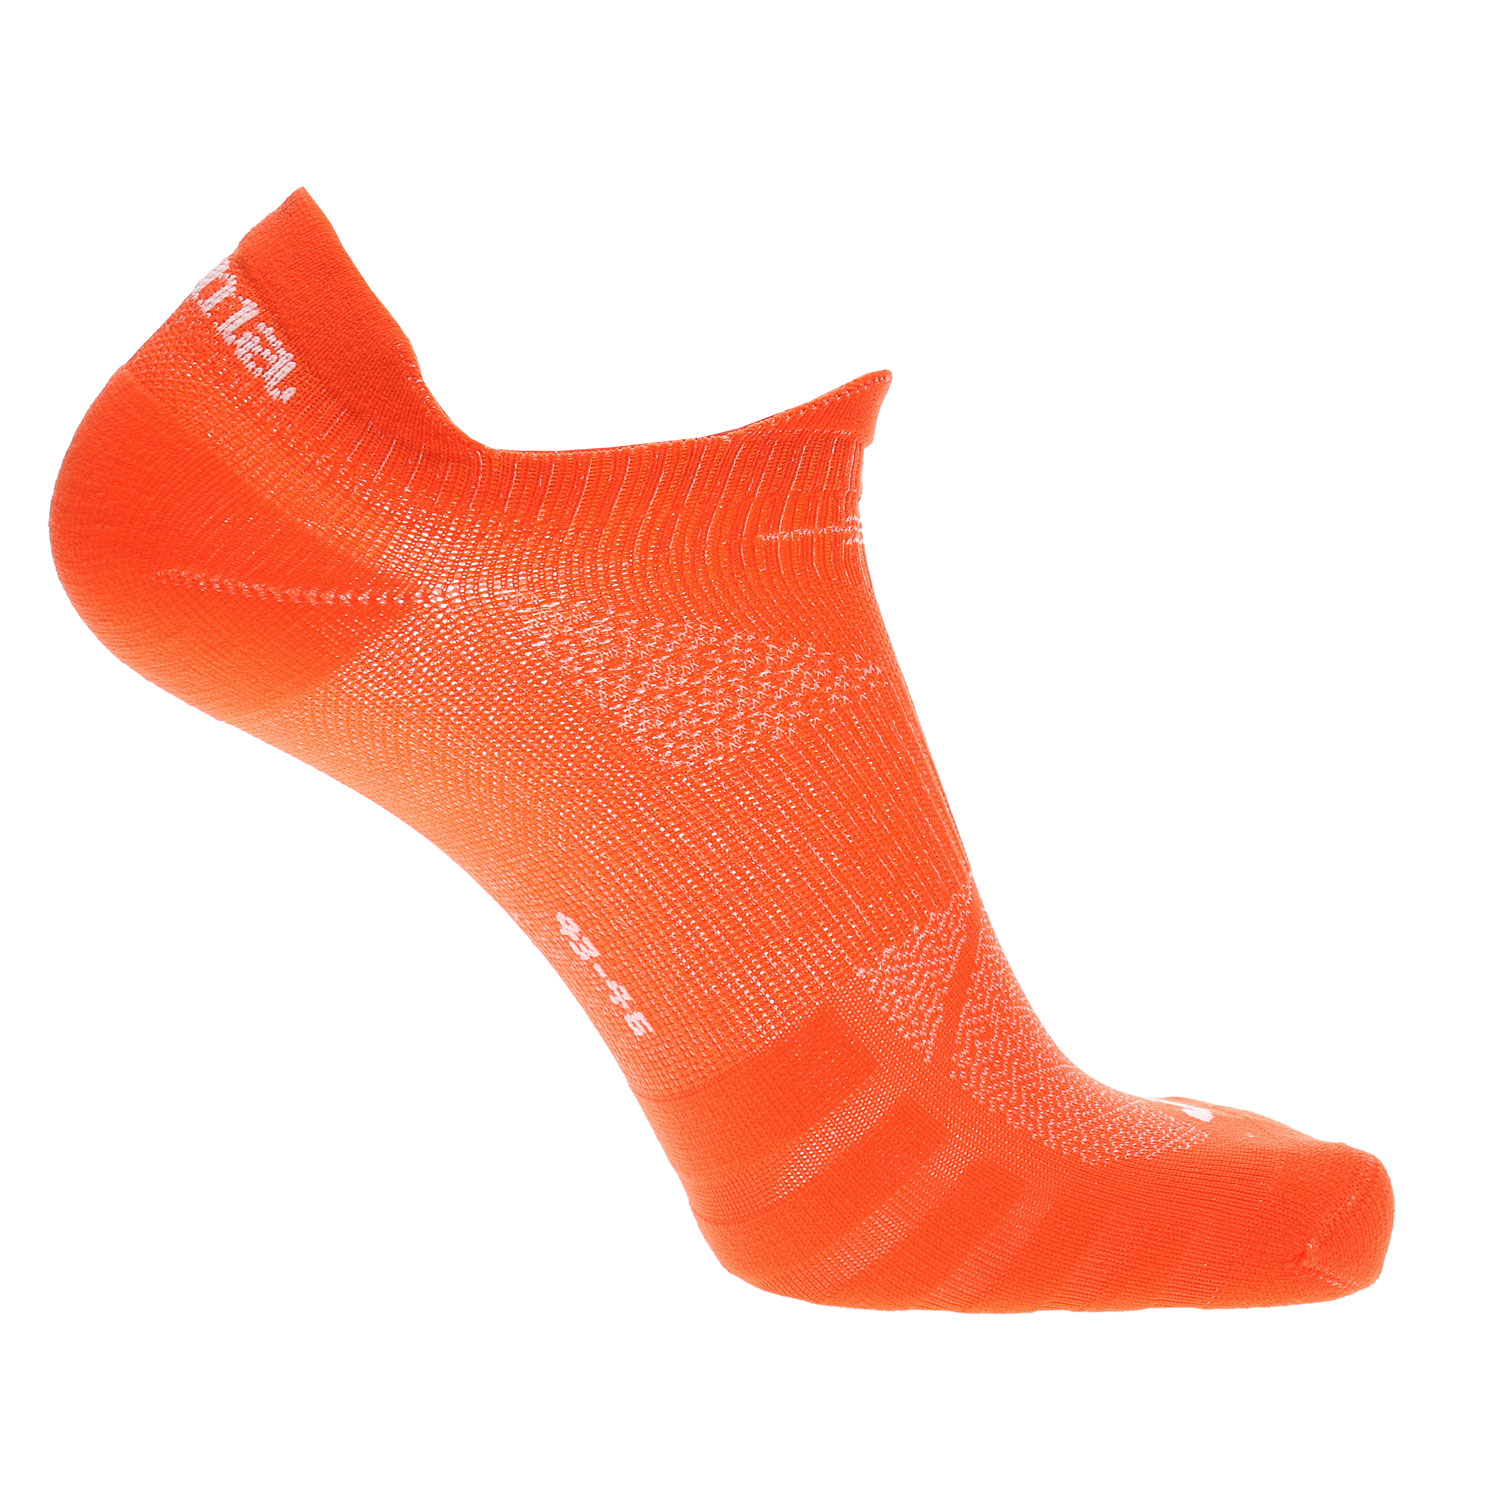 Joma Performance Socks - Orange